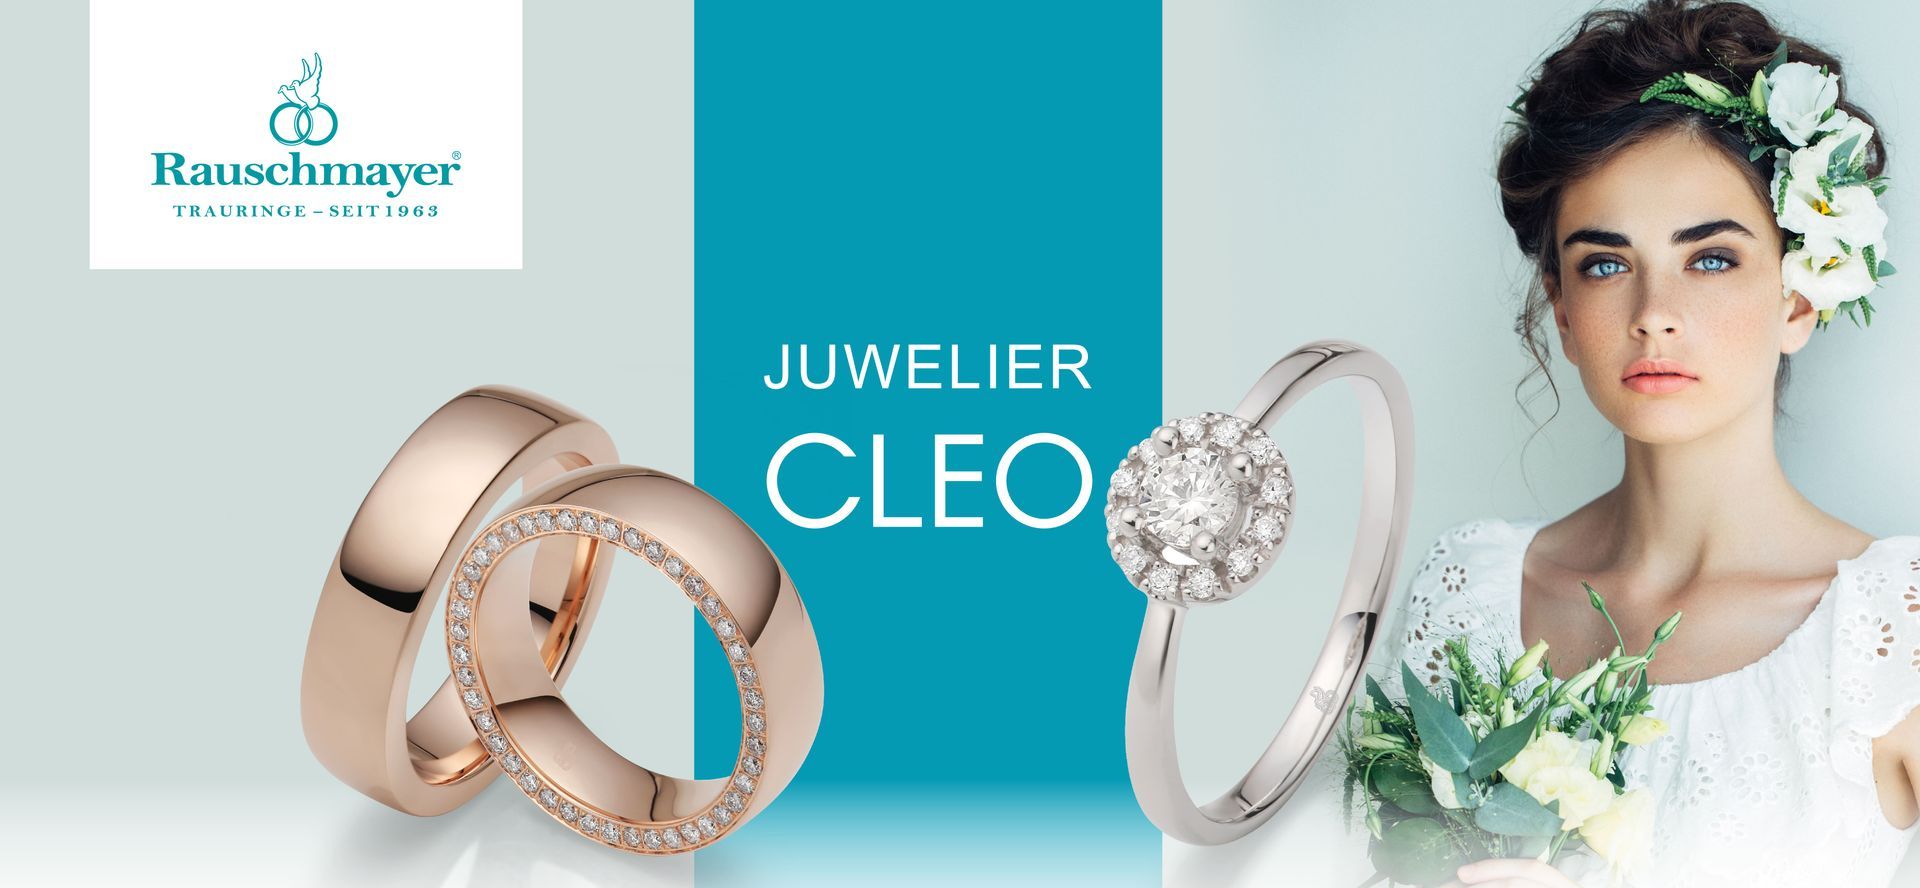 Juwelier Cleo Wallpaper von Rauschmayer mit Trauringen und Verlobungsringen.